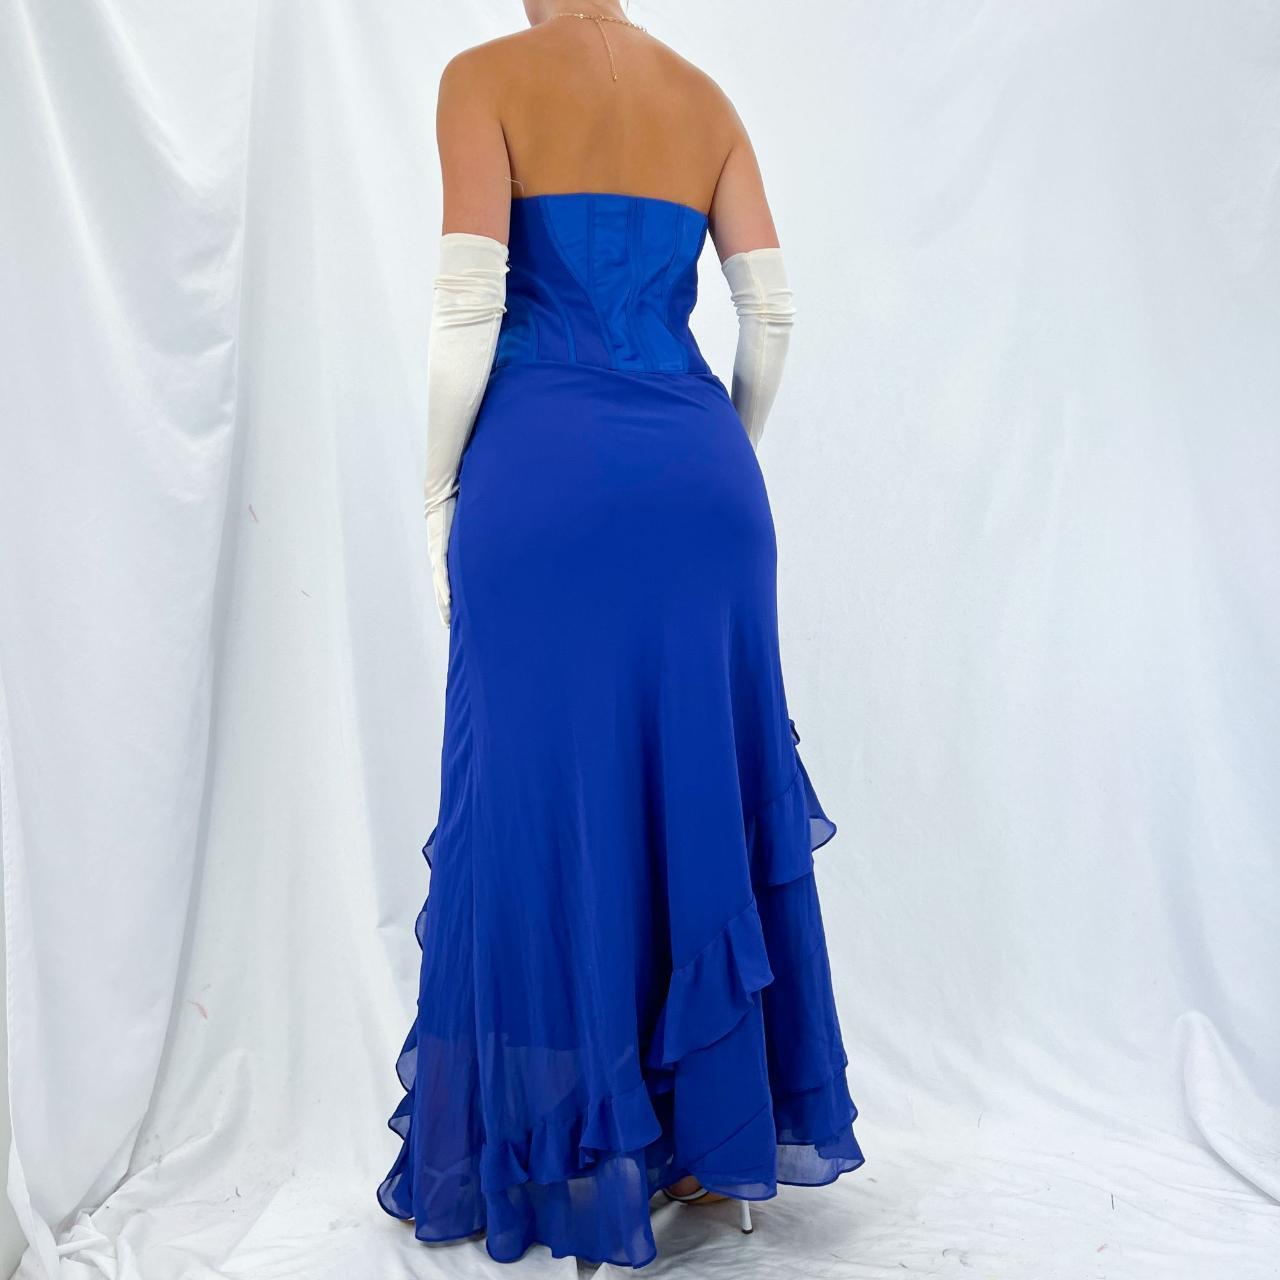 Product Image 4 - [#1660]

Karen Millen Designer Royal Blue